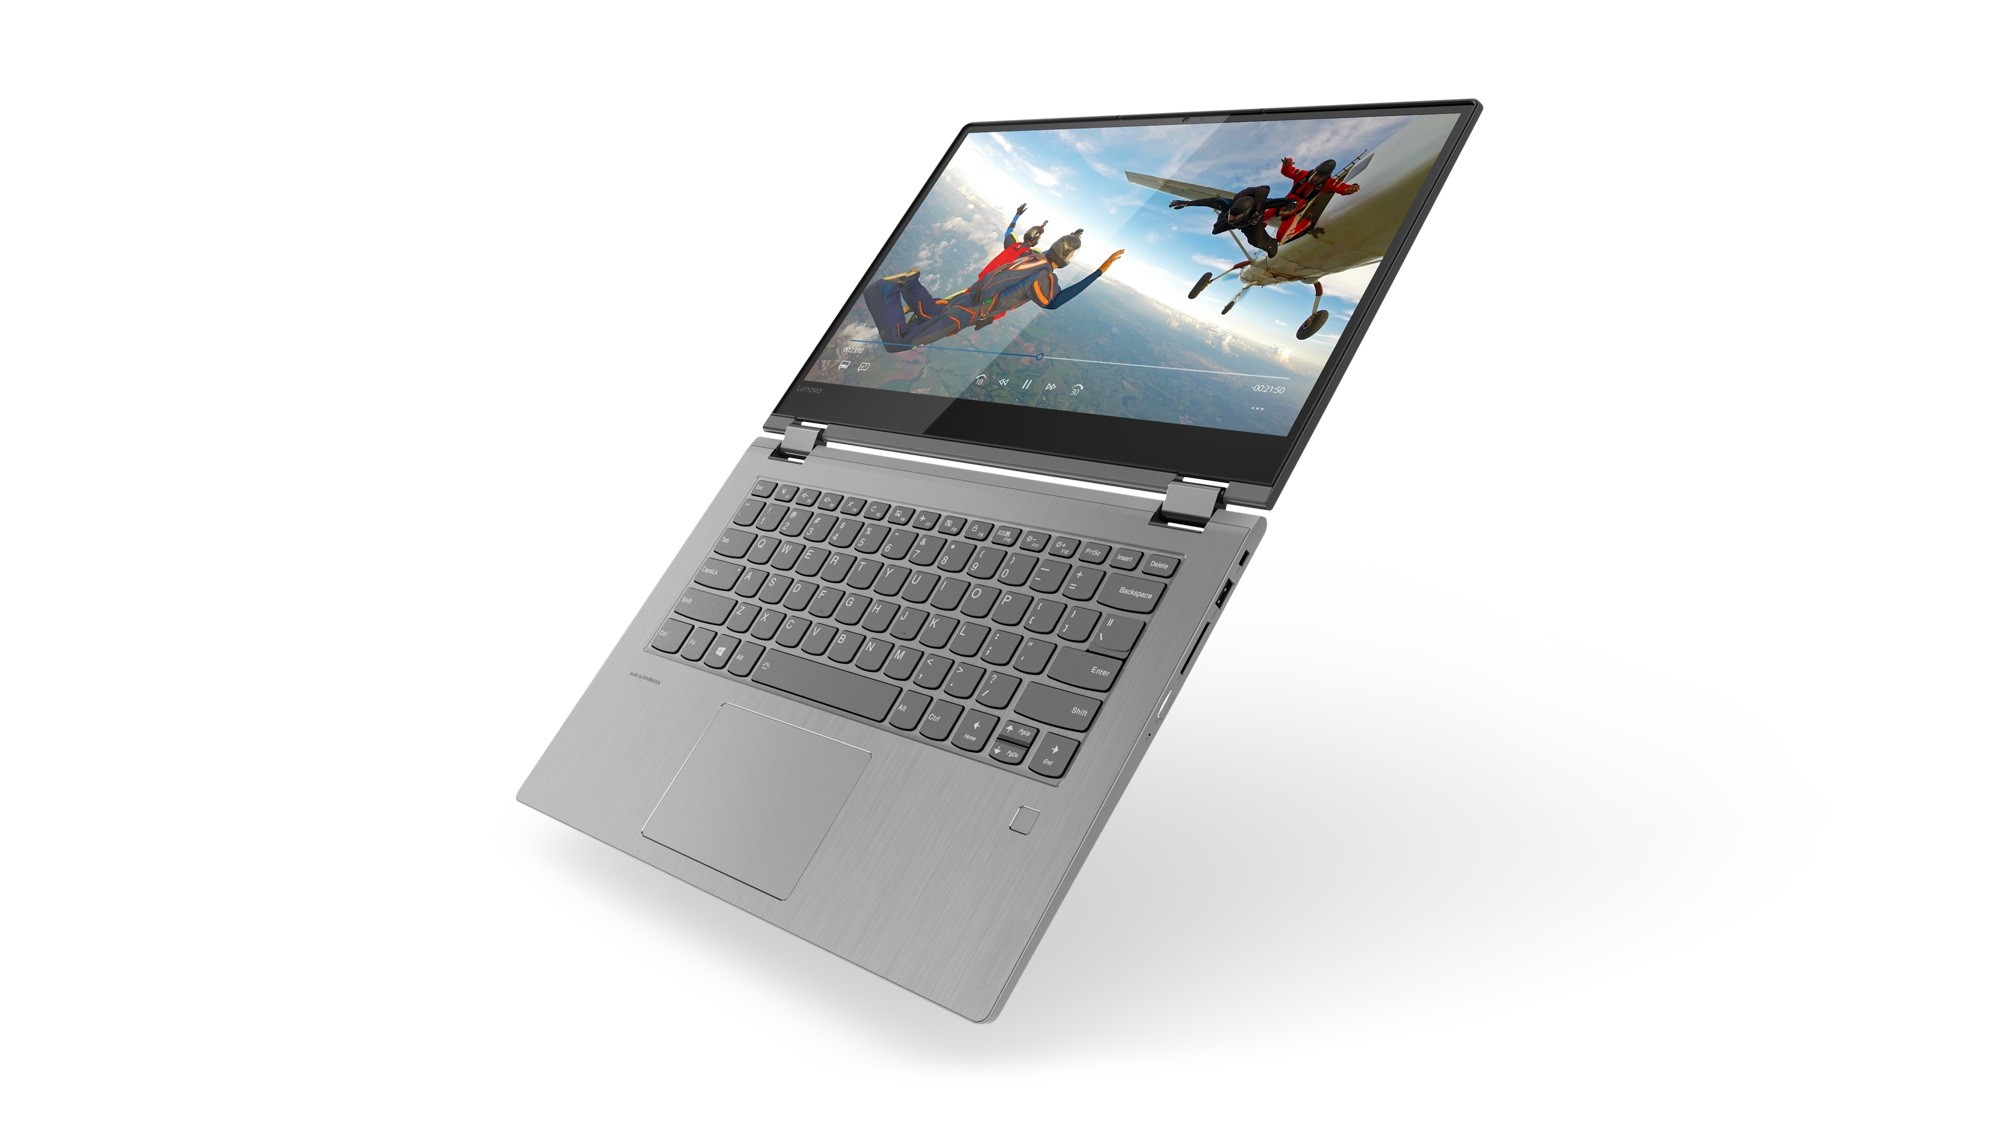 Lenovo Yoga 730-15IKB 15.6" FHD Touch i7-8550U 1.8GHz 8GB 256GB W10H 2in1 Laptop